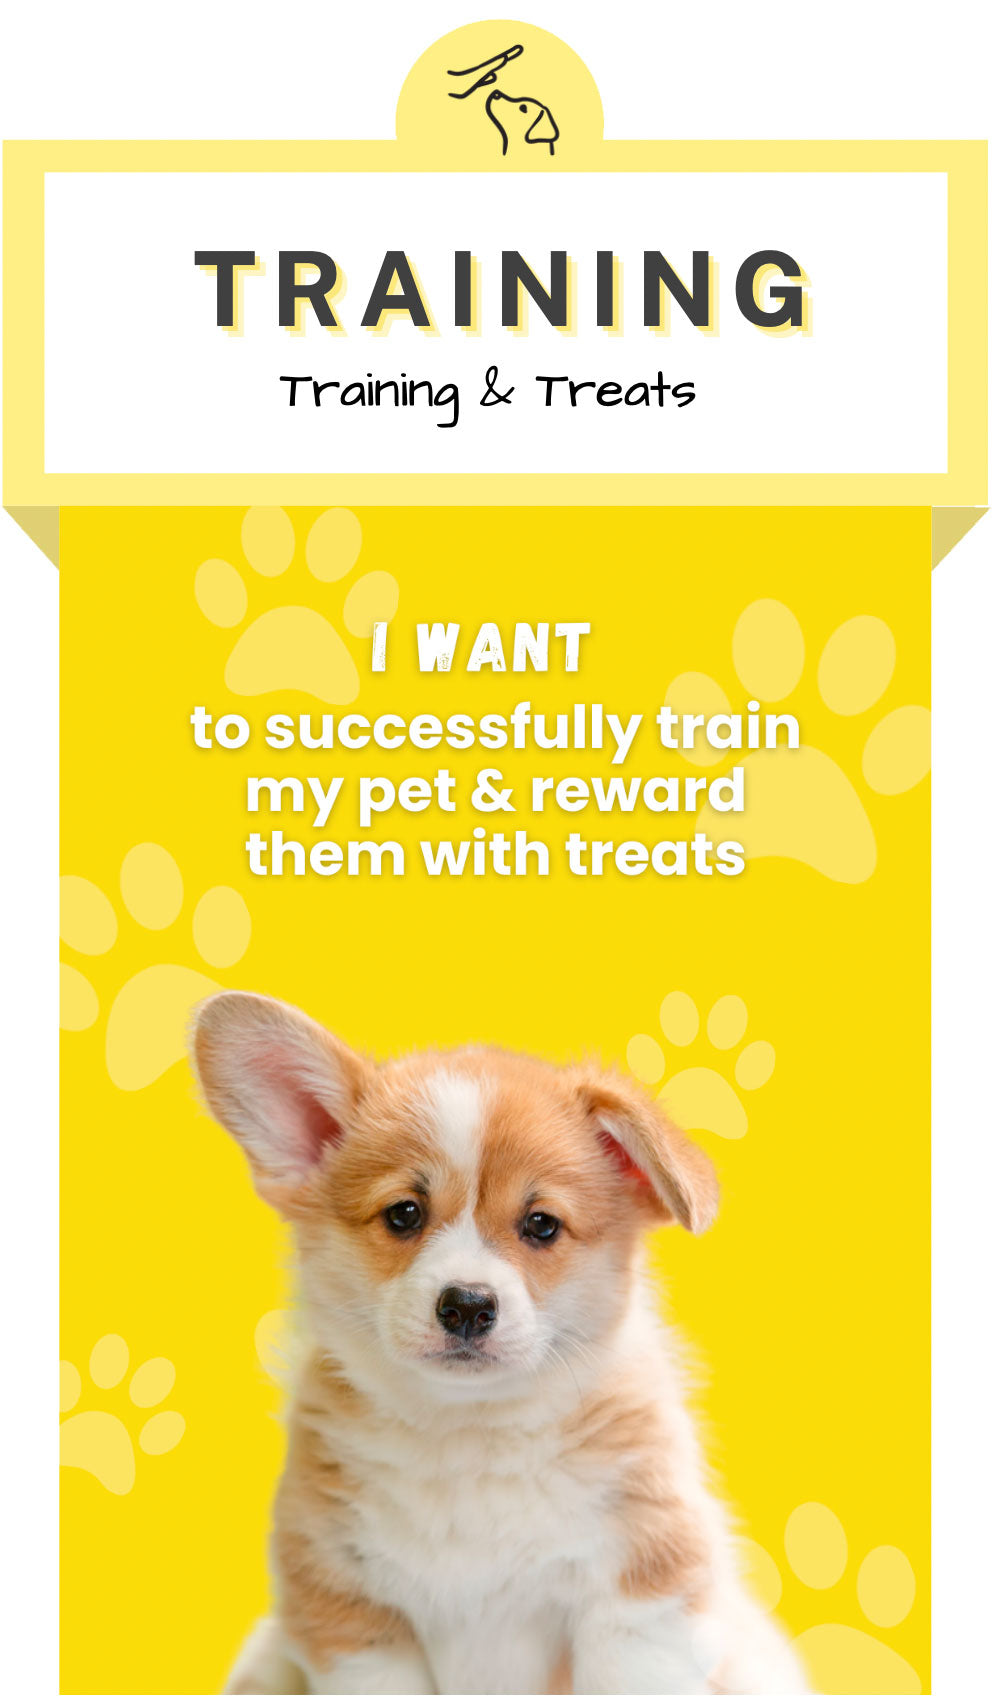 Training & Treats